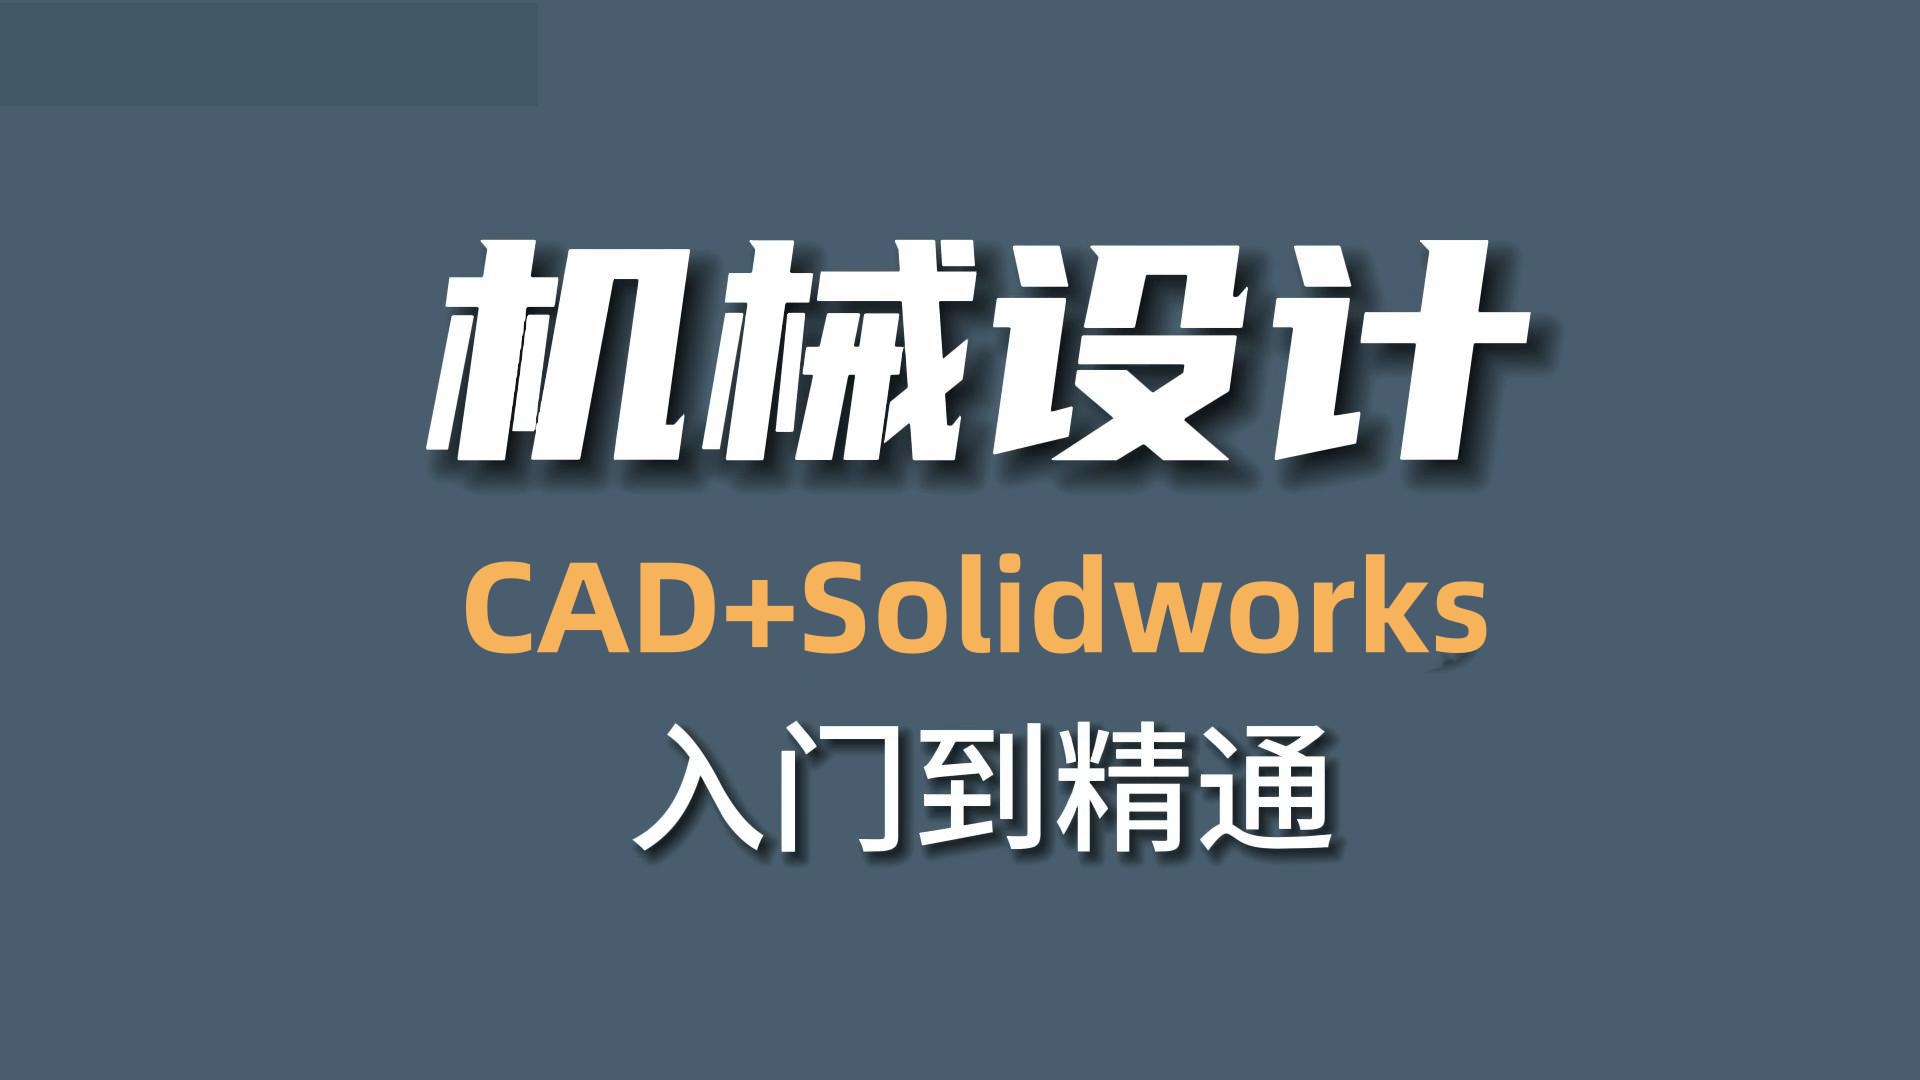 天津机械CAD+Solidworks培训